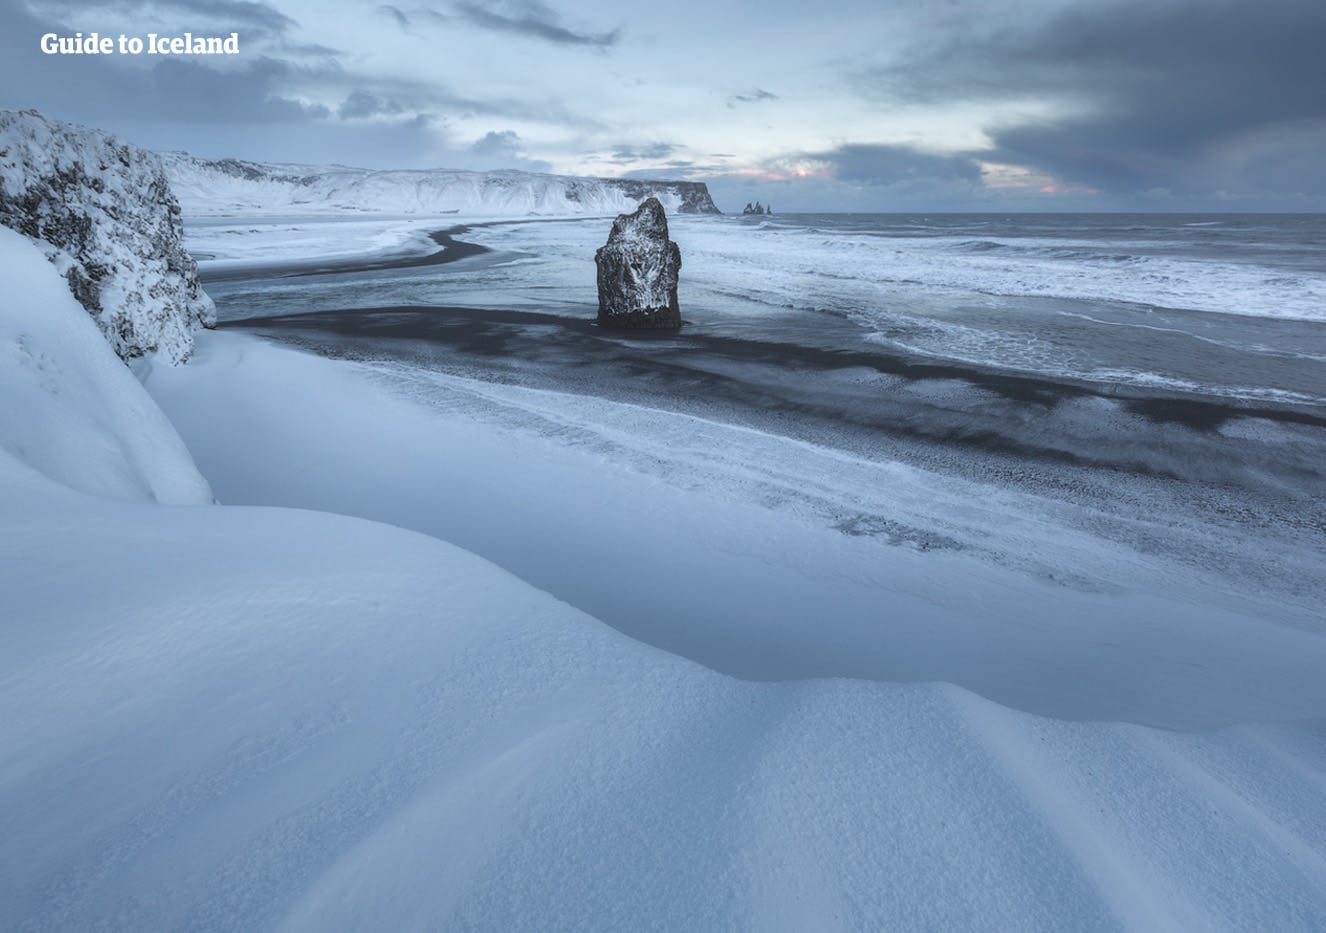 Las arenas negras de las playas de la costa sur de Islandia en las profundidades del invierno sólo son visibles donde el mar arrastra la nieve.